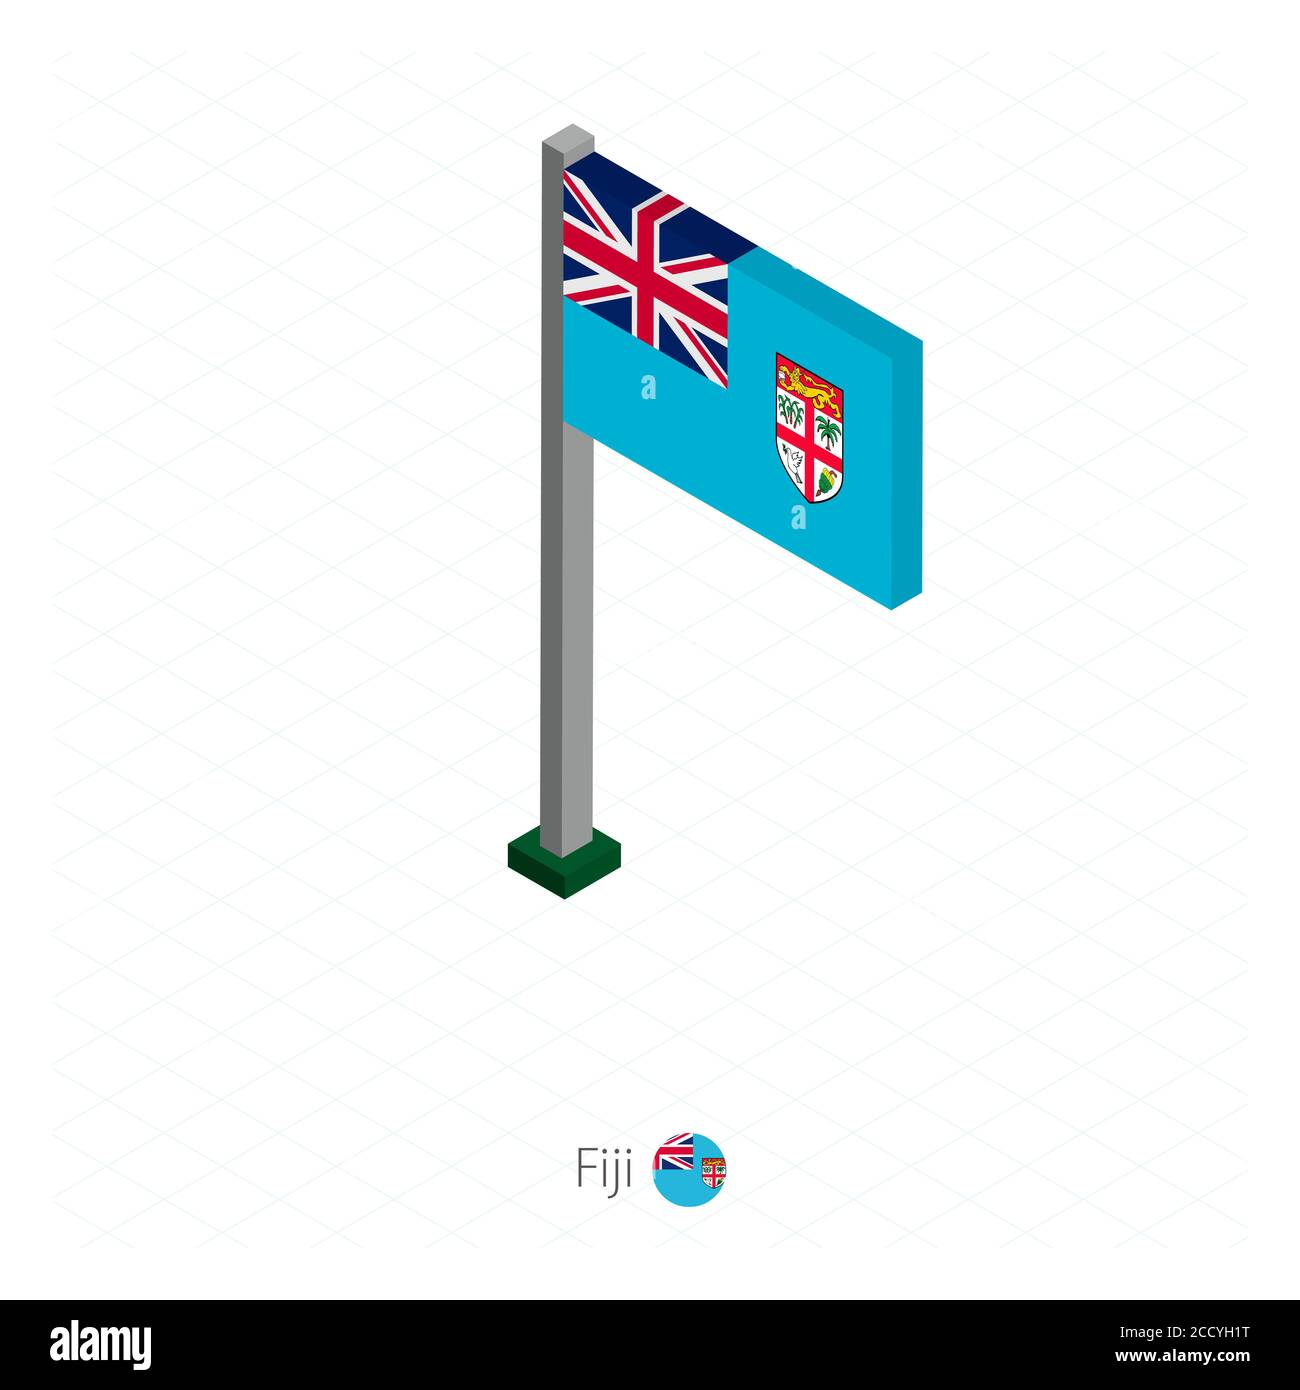 Fiji Flagge auf Fahnenmast in Isometrischer Dimension. Isometrischer blauer Hintergrund. Vektorgrafik. Stock Vektor